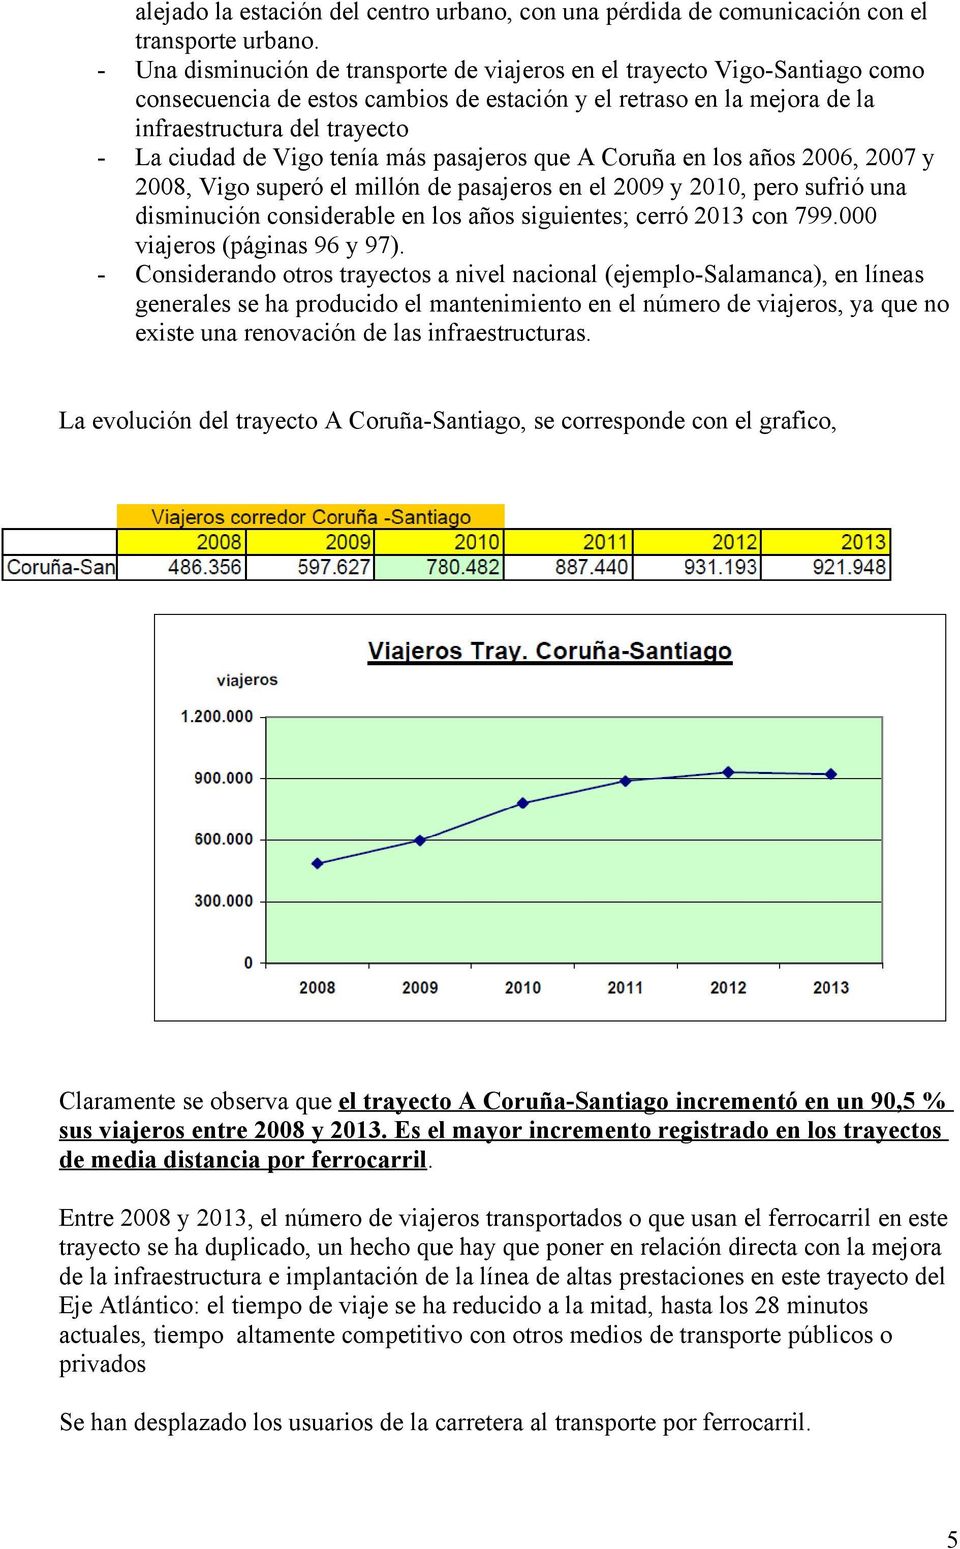 Vigo tenía más pasajeros que A Coruña en los años 2006, 2007 y 2008, Vigo superó el millón de pasajeros en el 2009 y 2010, pero sufrió una disminución considerable en los años siguientes; cerró 2013